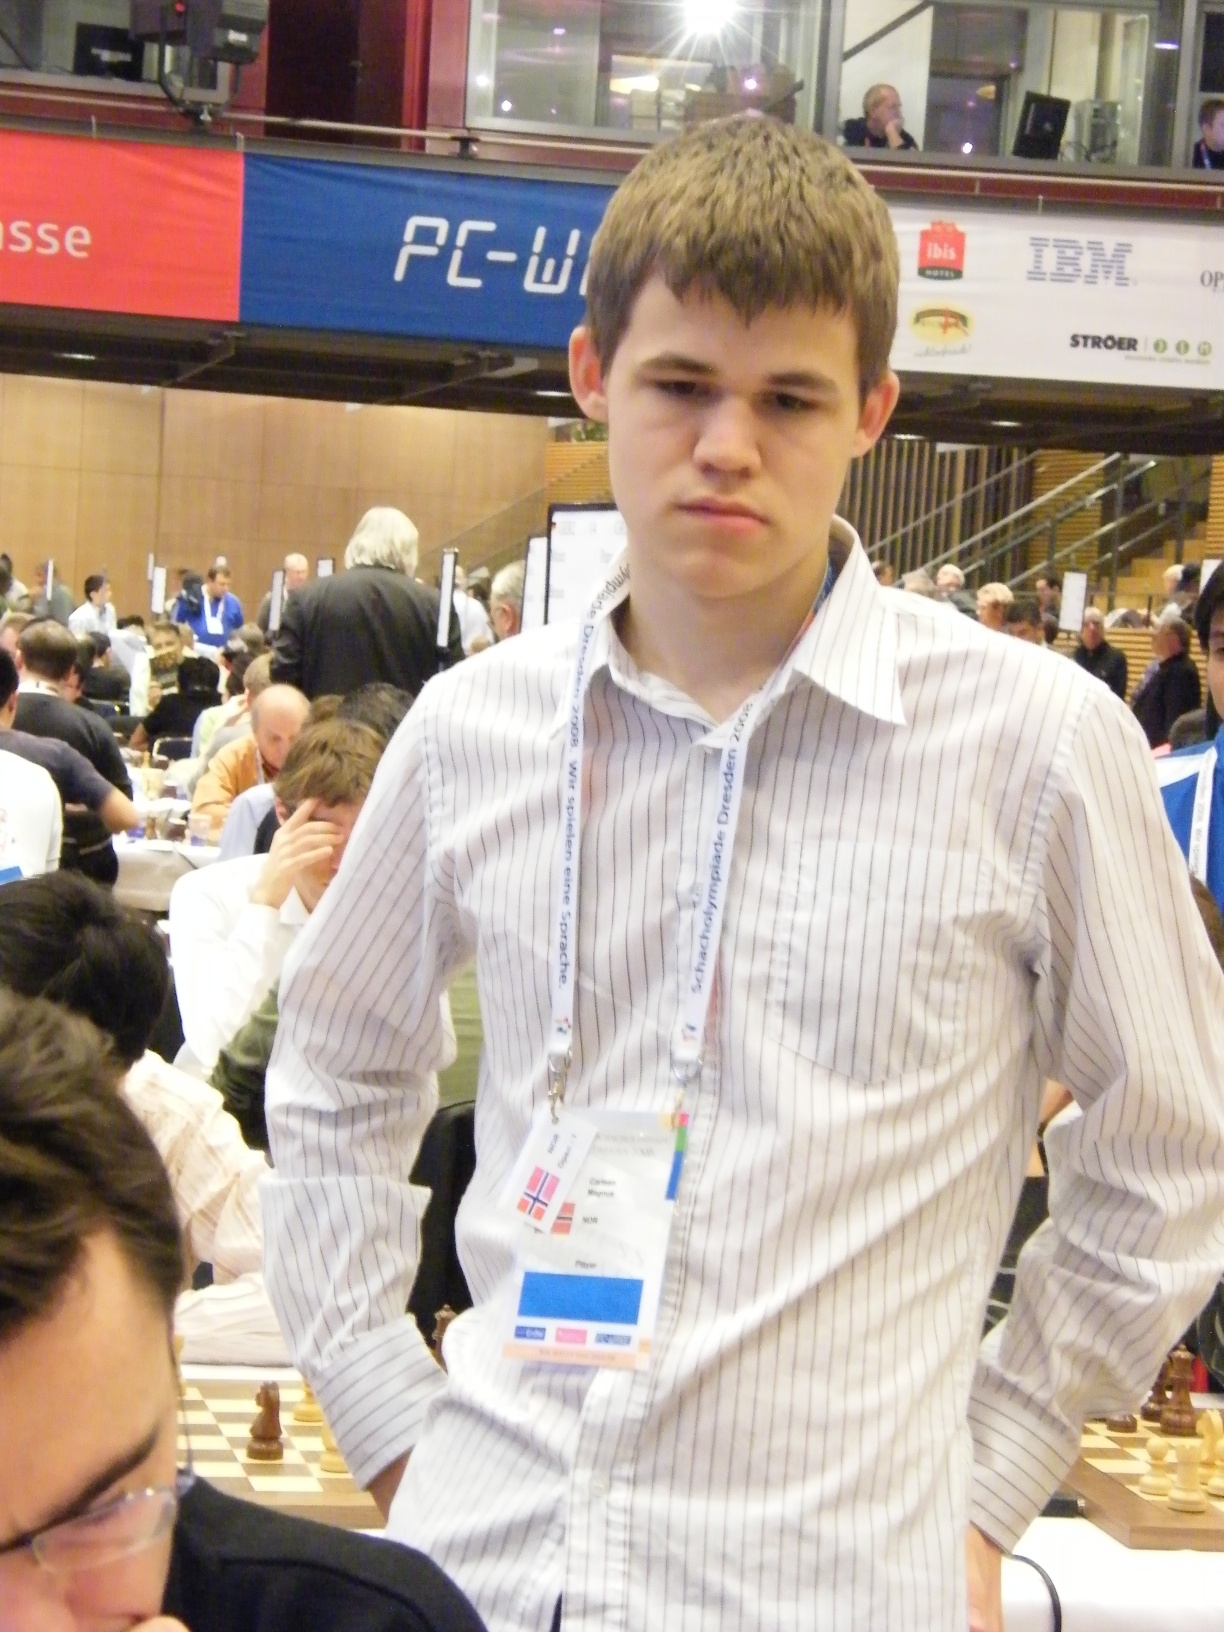 Magnus Carlsen.jpg